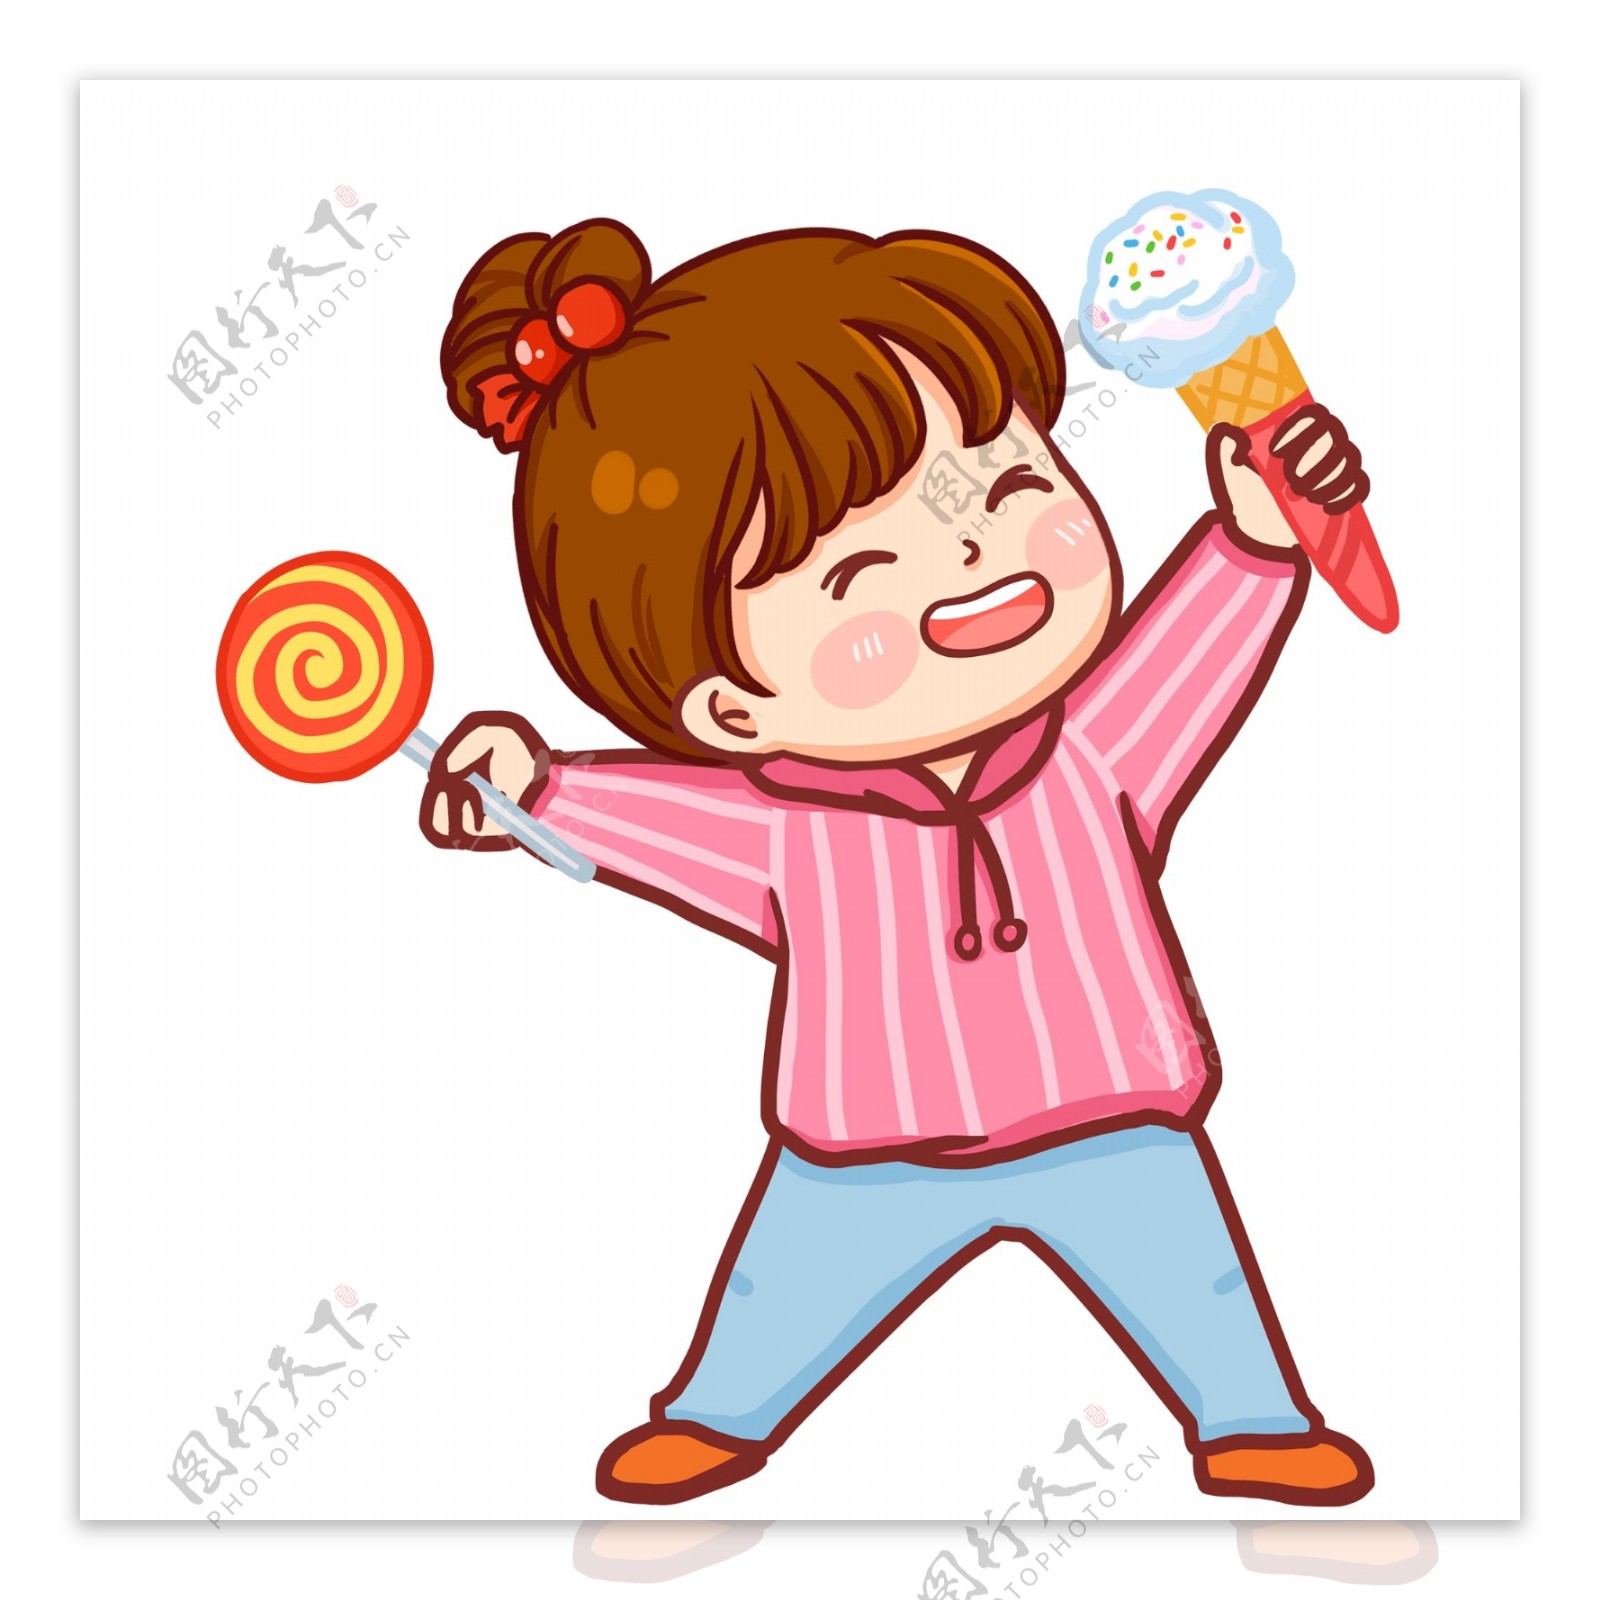 彩绘可爱吃棒棒糖和冰激凌的小女孩